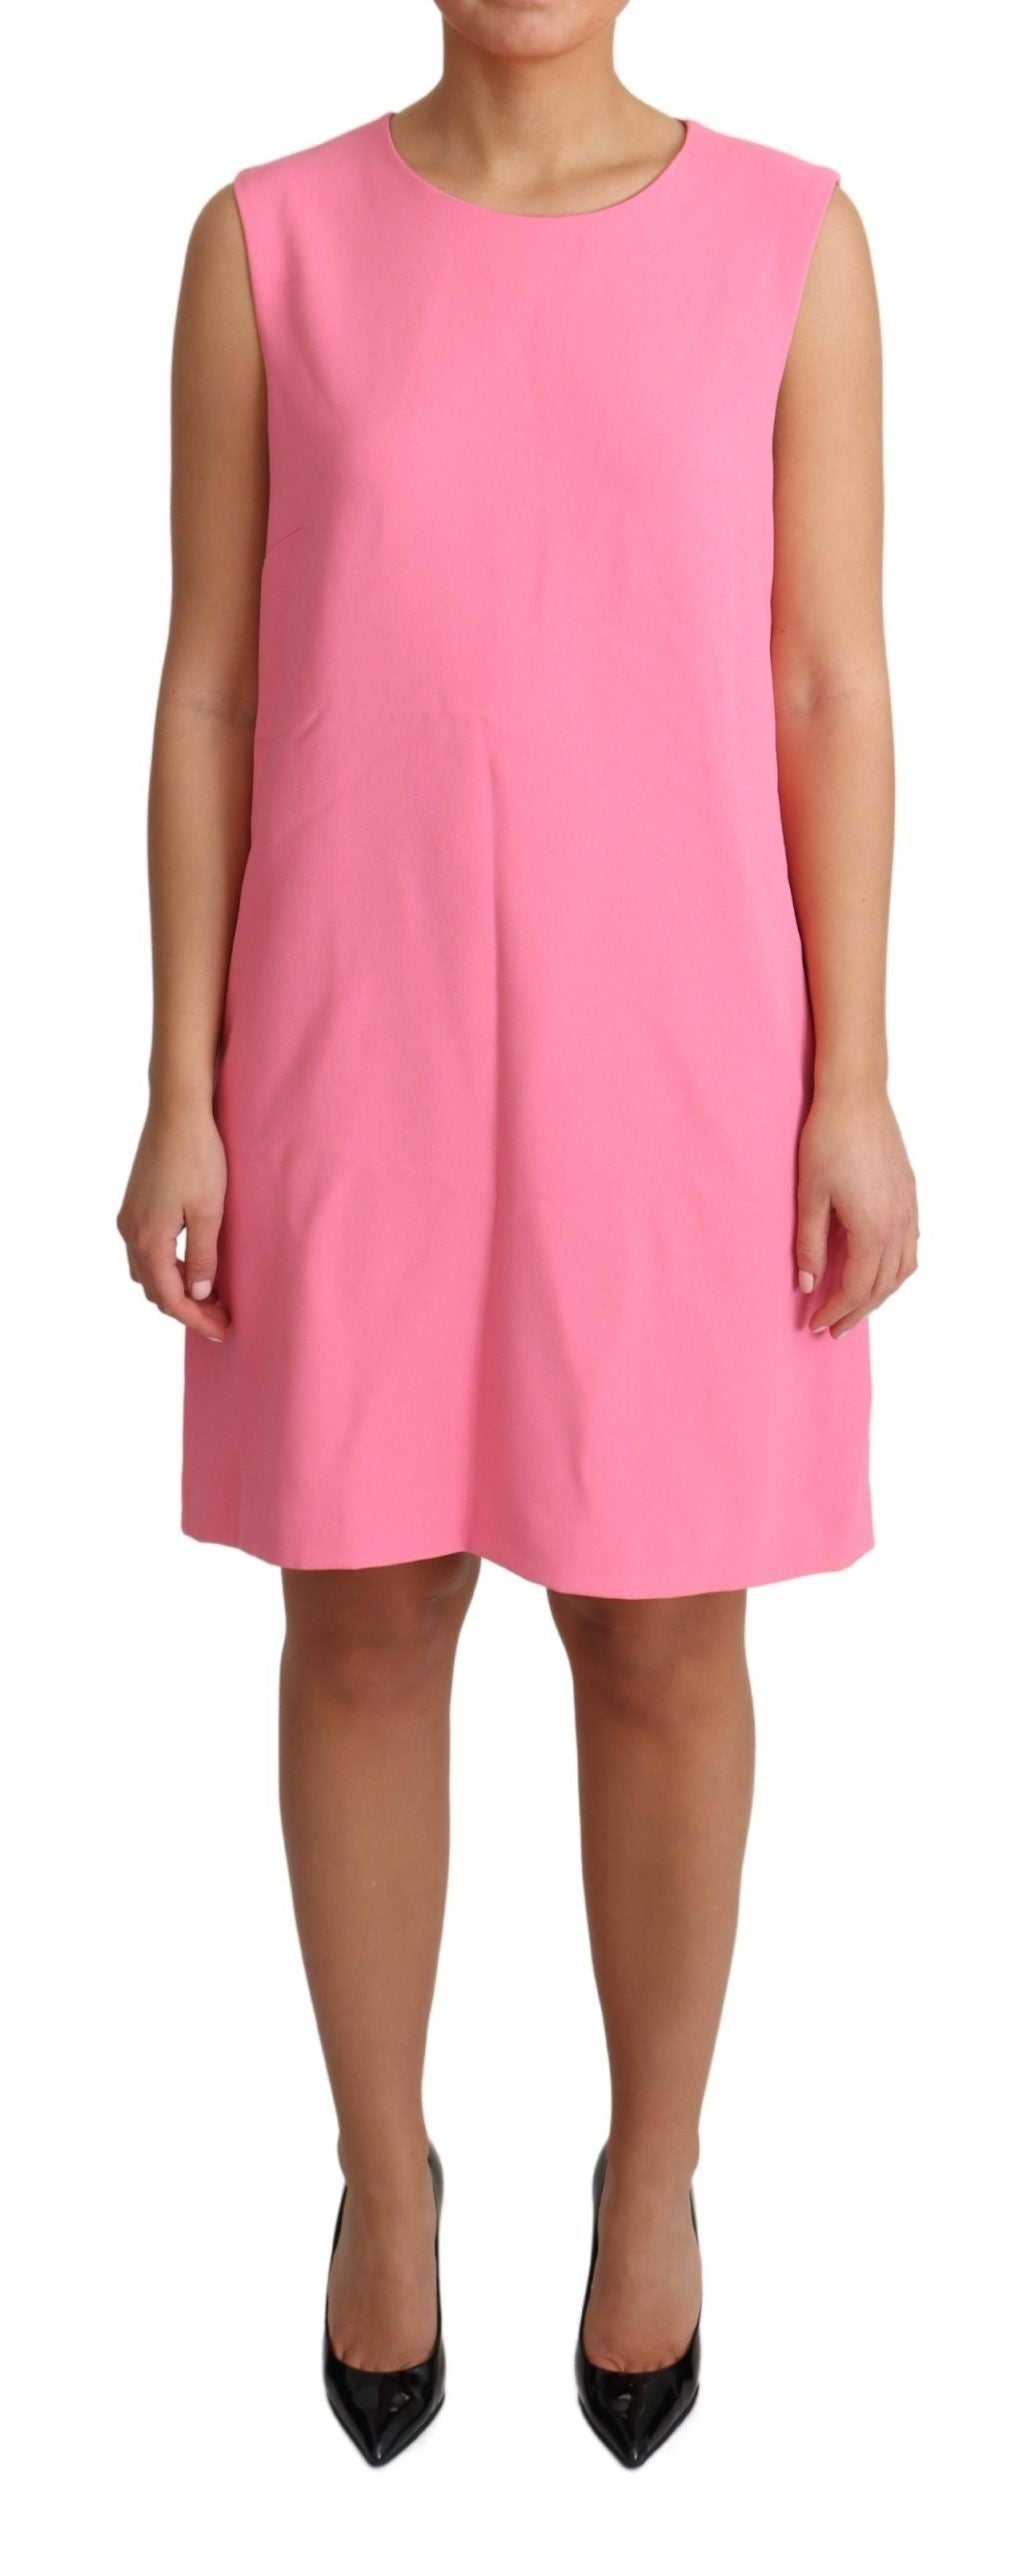 Elegant Pink Shift Knee Length Dress